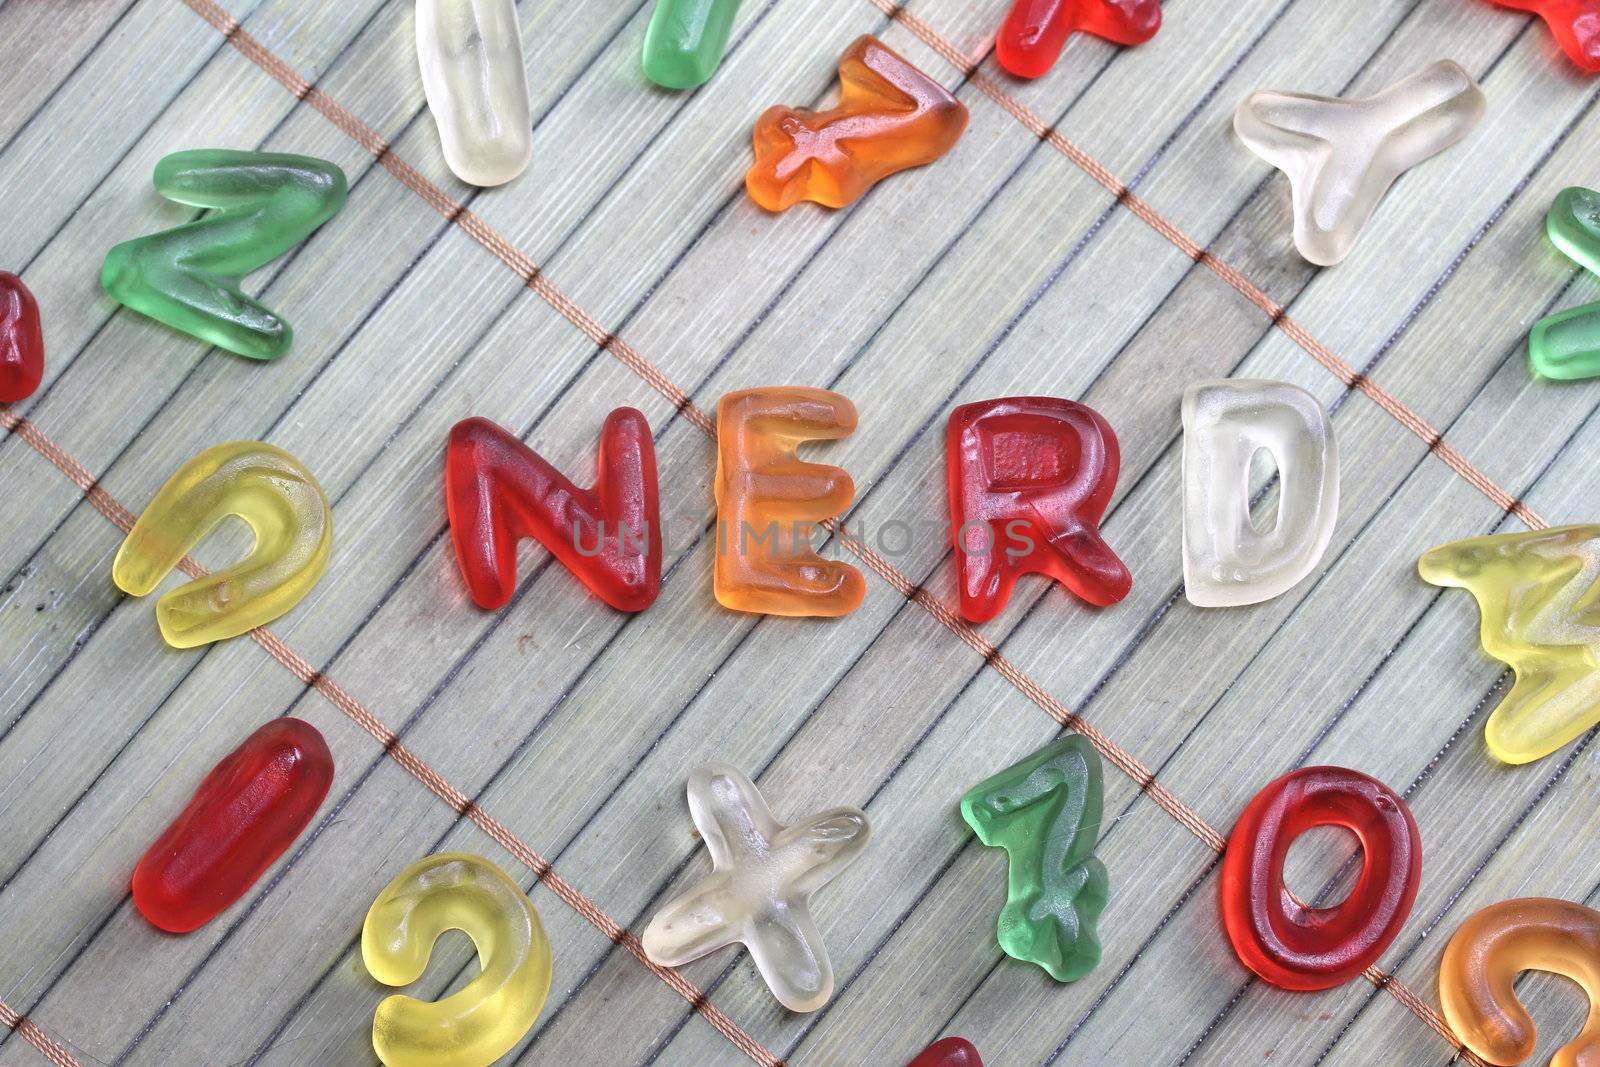 sweet letters nerd by Teka77